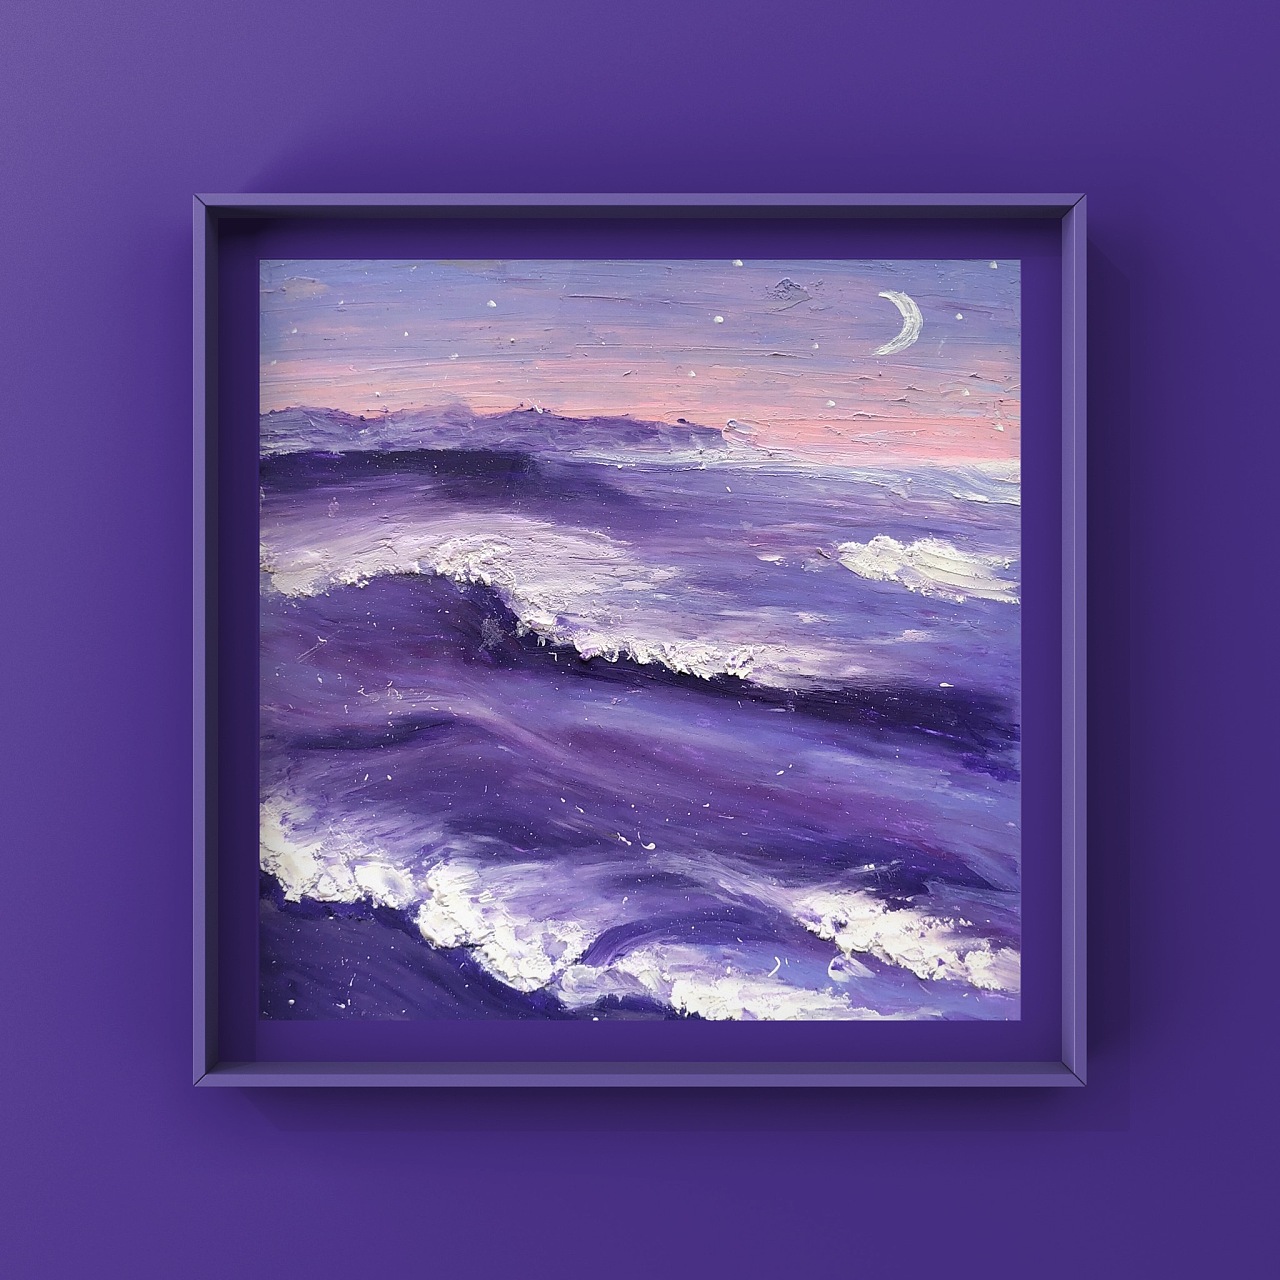 使用油画棒绘制 手绘 温柔紫色系海浪 原创